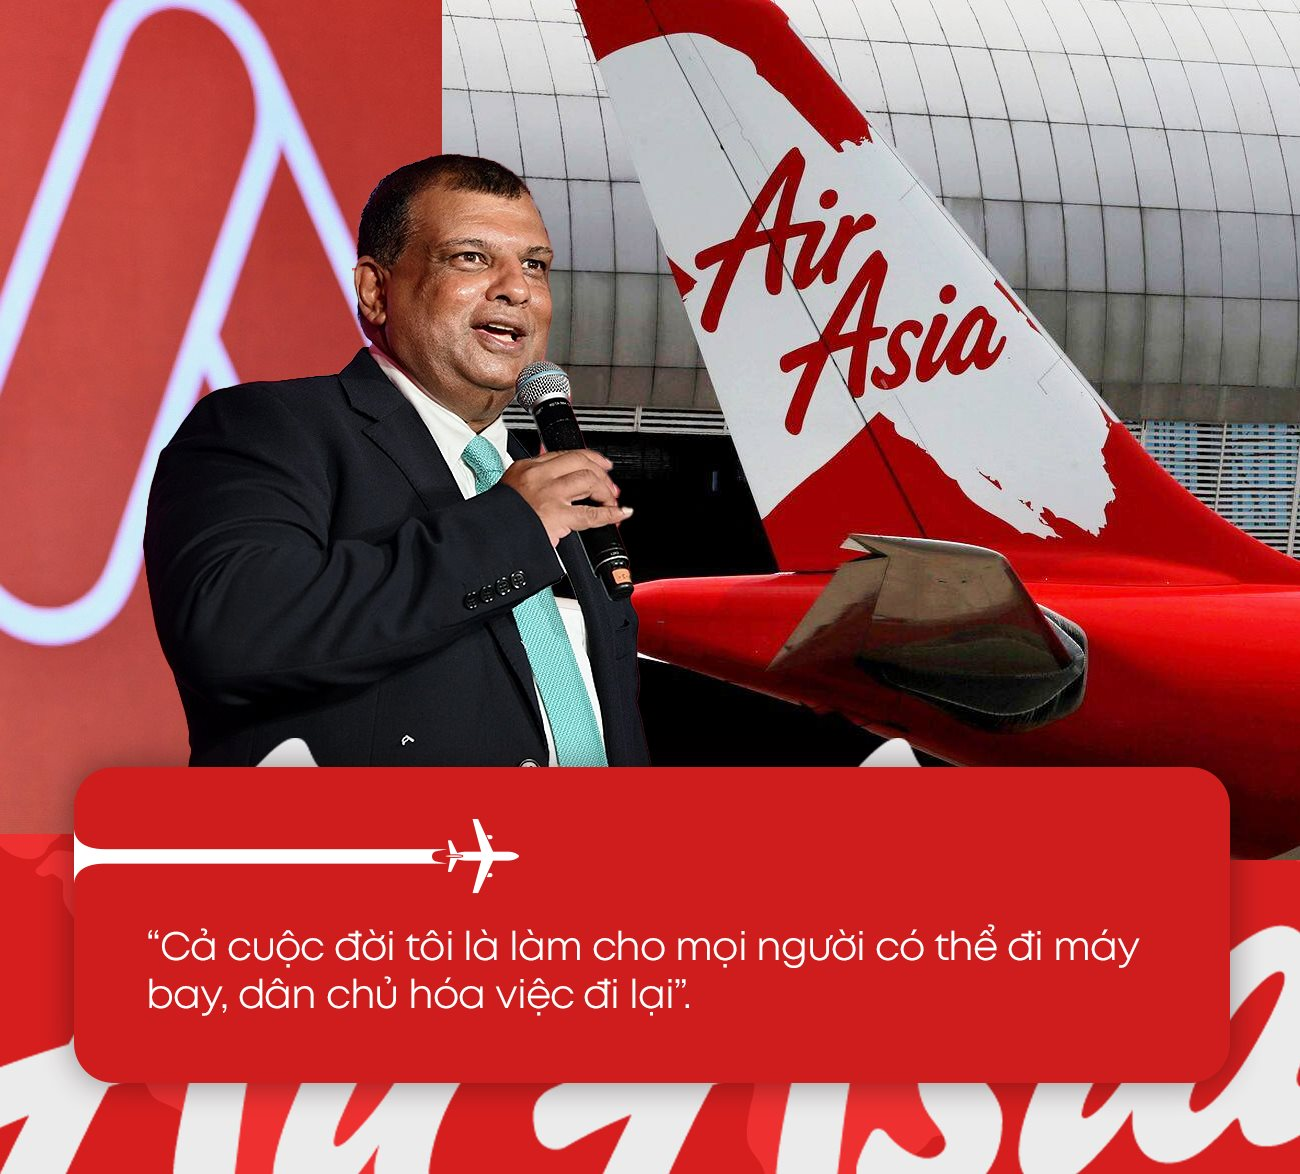 CEO Airasia: ‘Cắm’ nhà lập hãng hàng không, đối mặt với trải nghiệm ‘suýt chết’ và lời khẳng định ‘chúng tôi sẽ mạnh mẽ hơn’ - Ảnh 9.